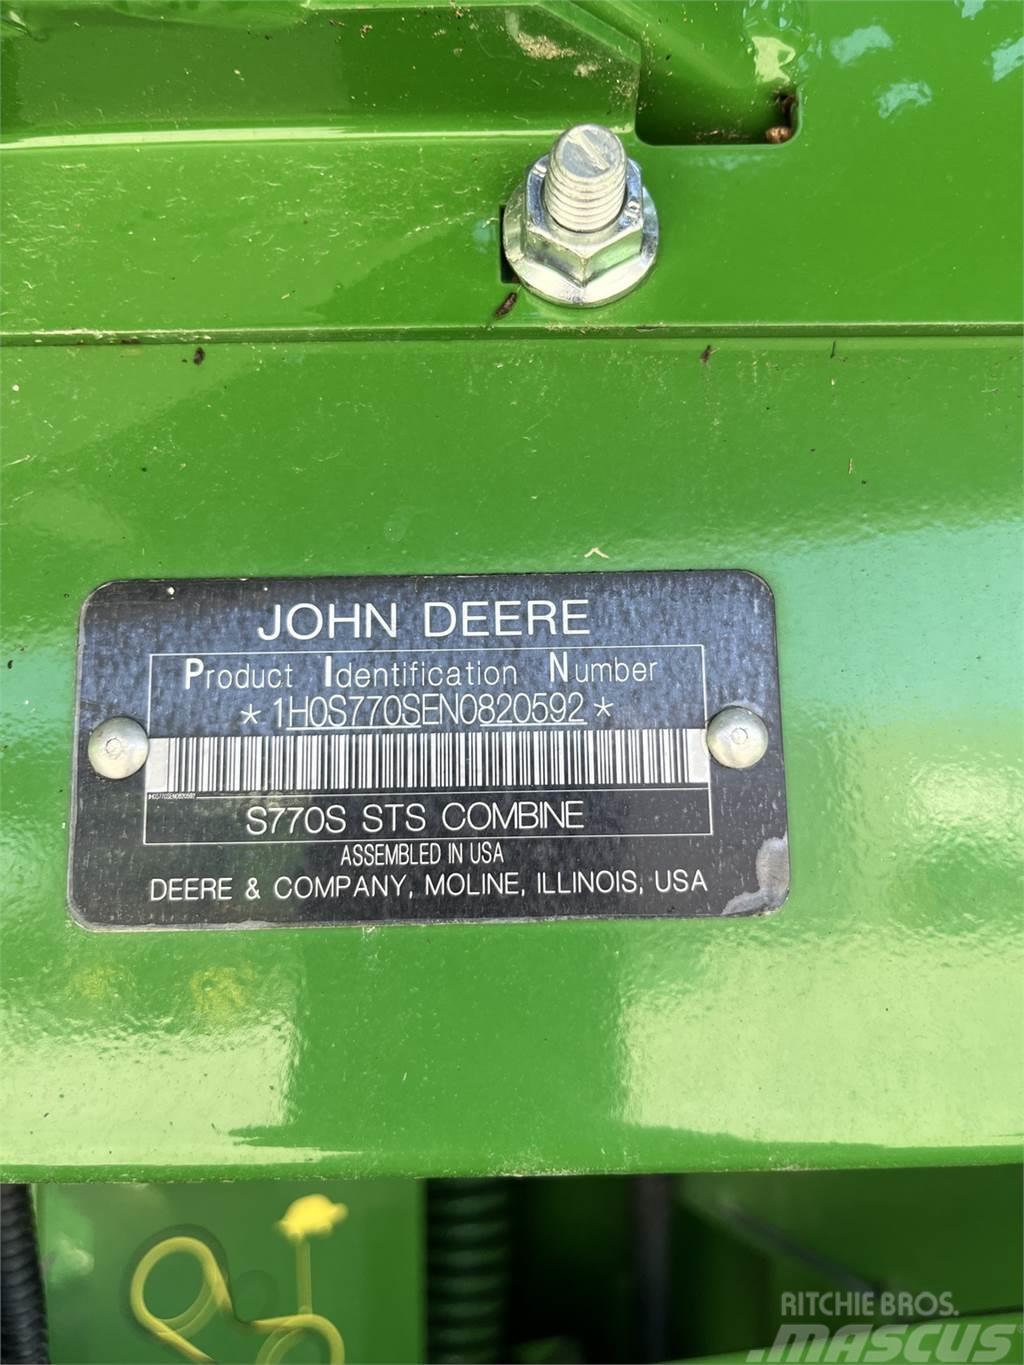 John Deere S770 Combine harvesters